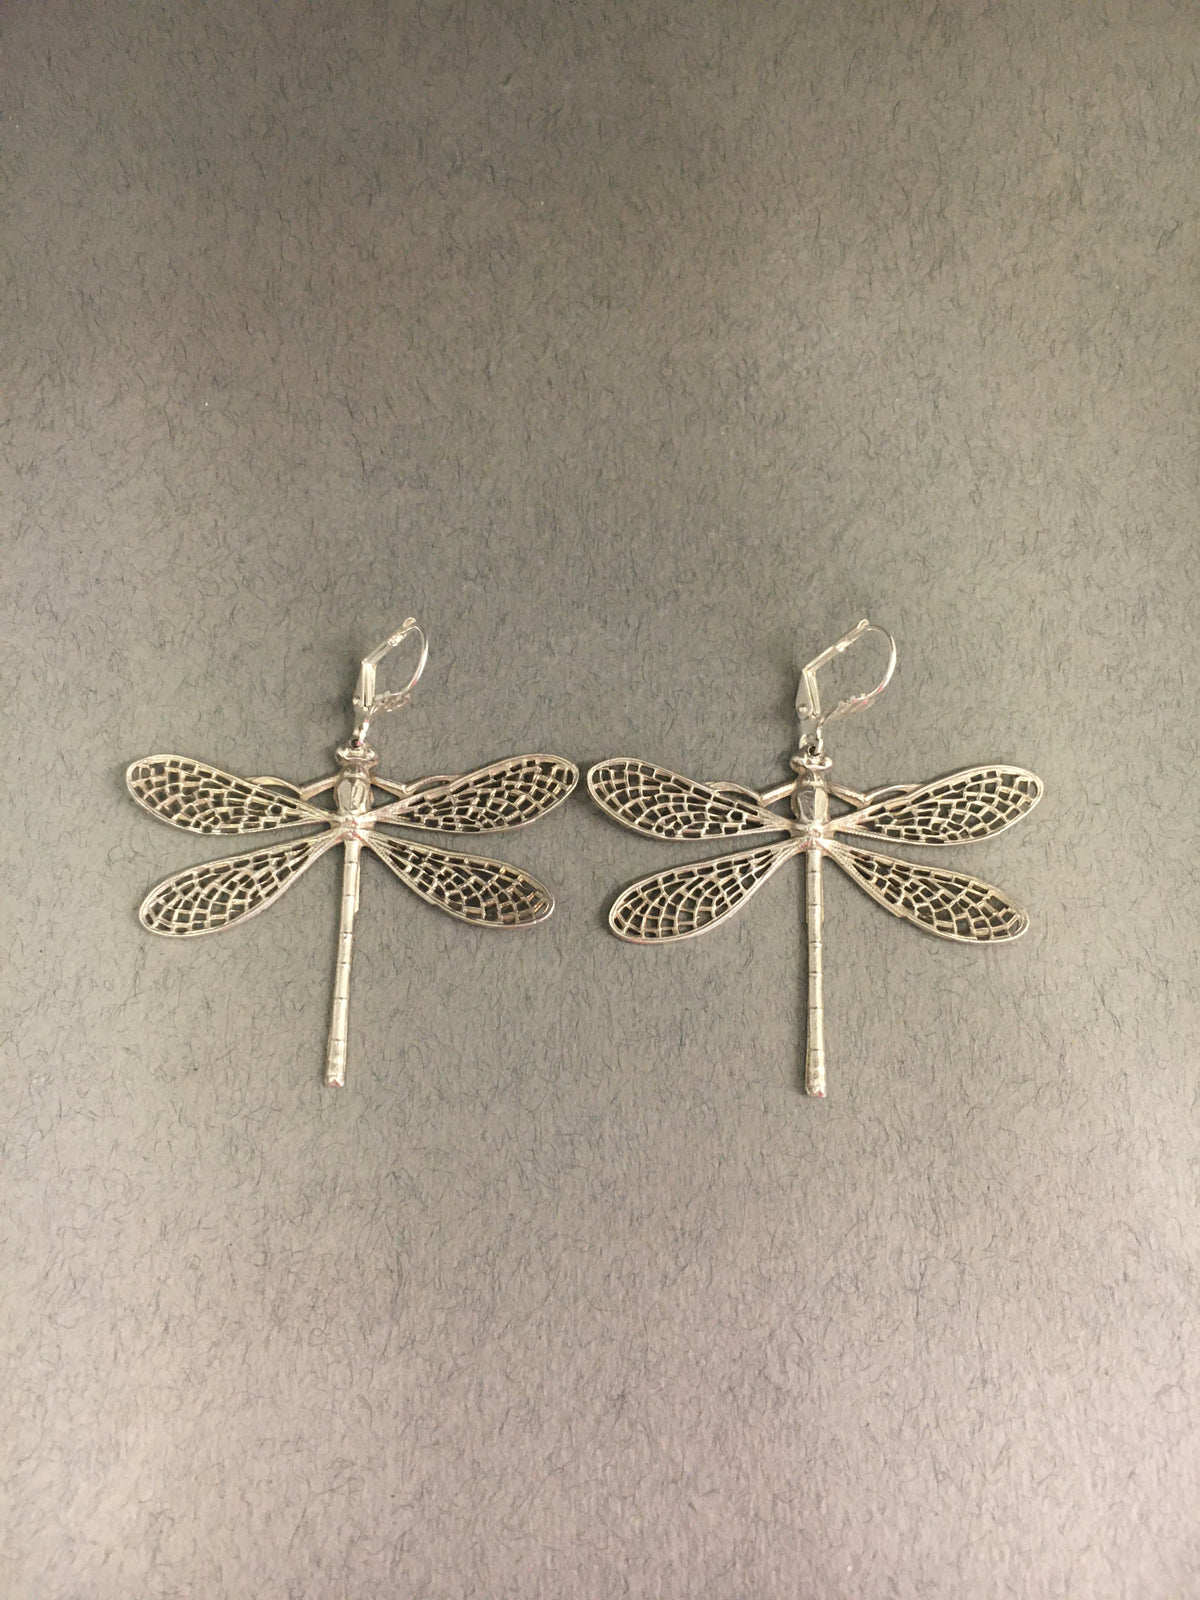 Dragonfly Earrings by Jess Lelong